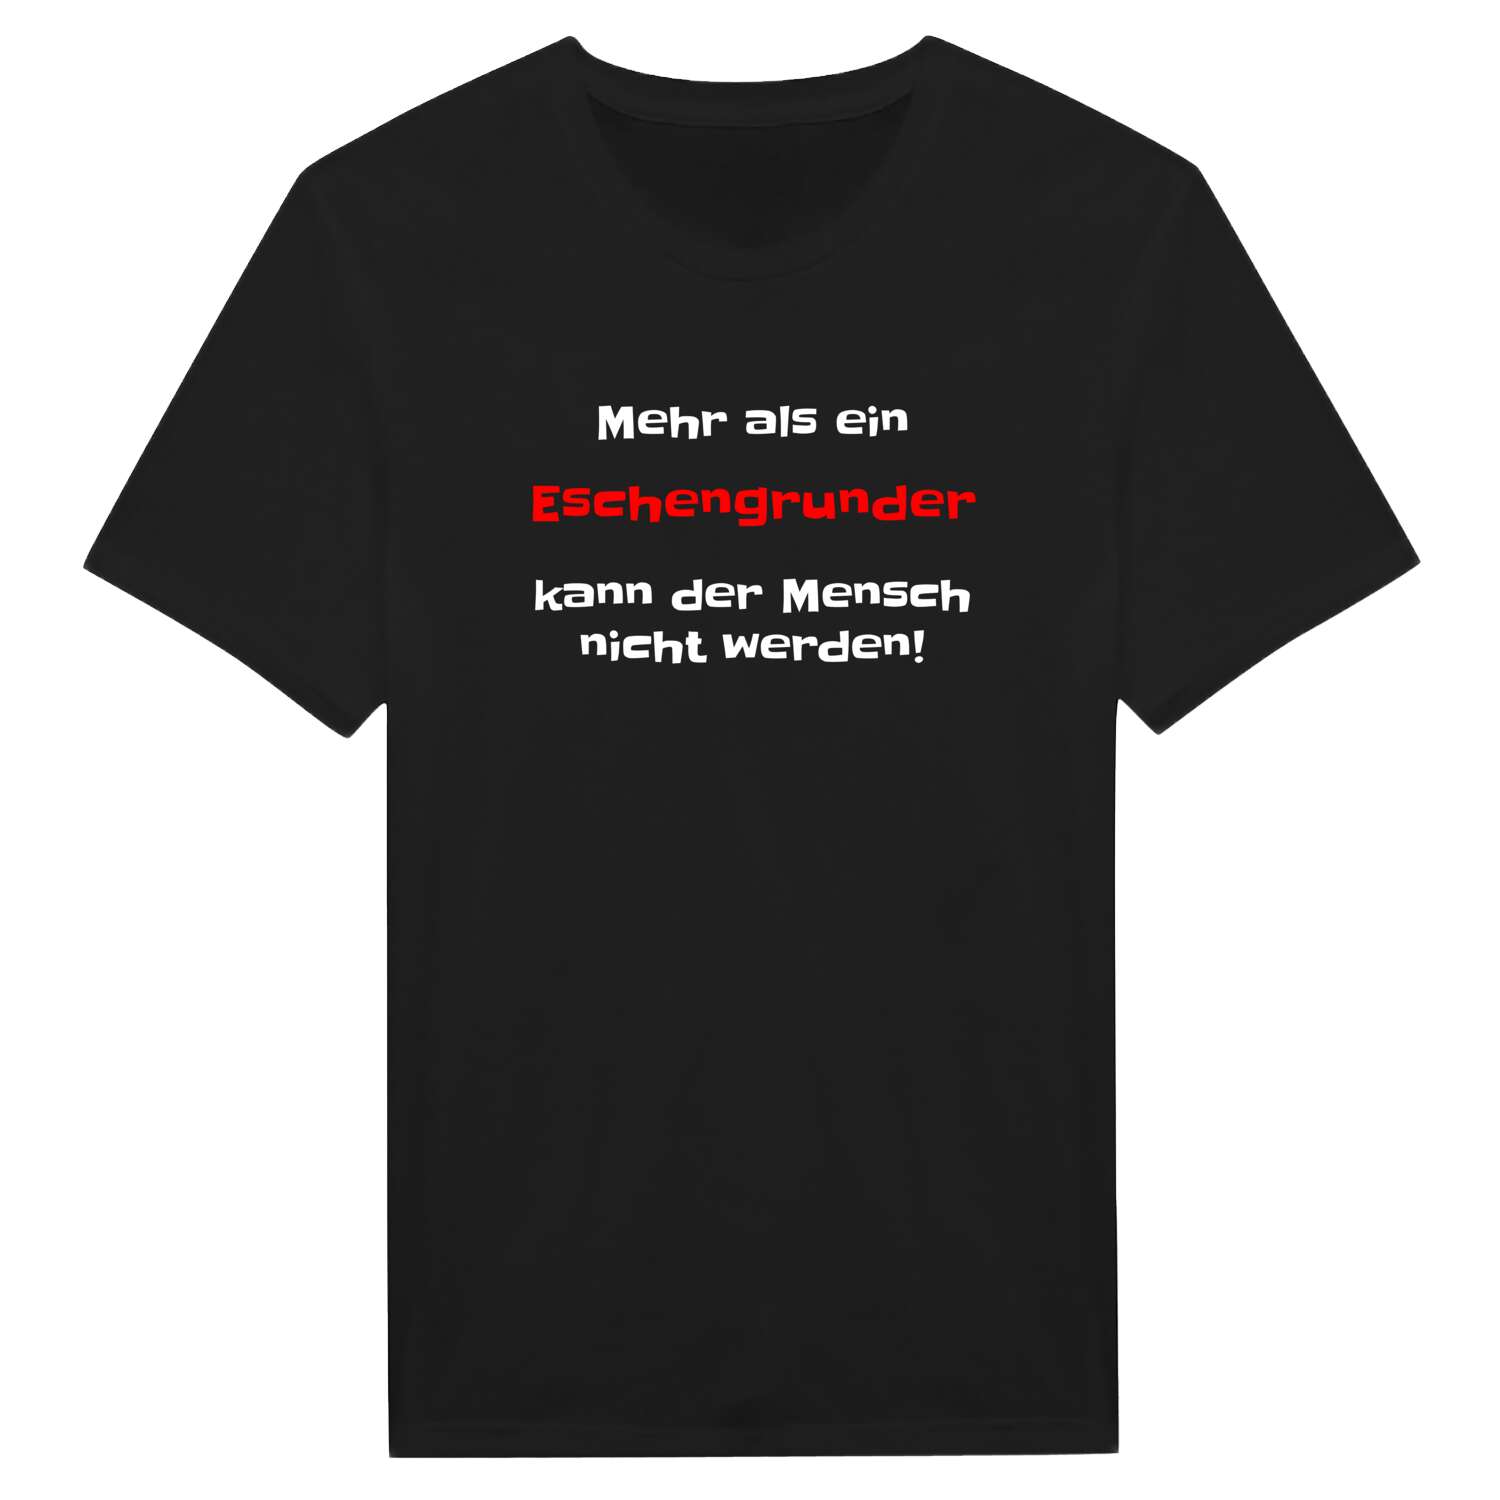 Eschengrund T-Shirt »Mehr als ein«